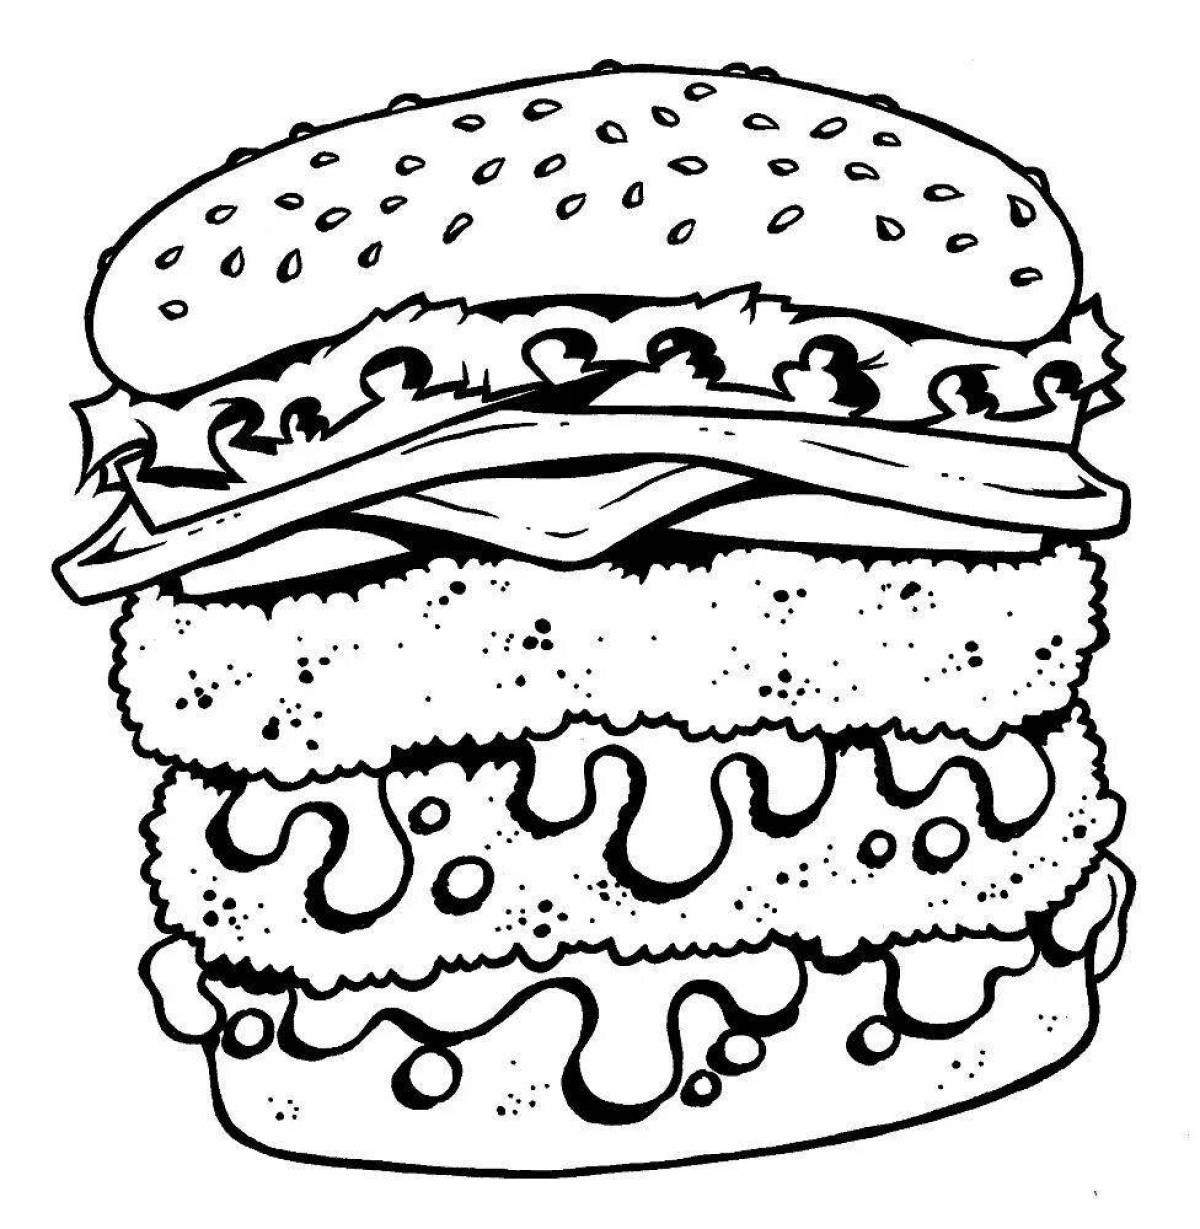 Coloring juicy hamburger